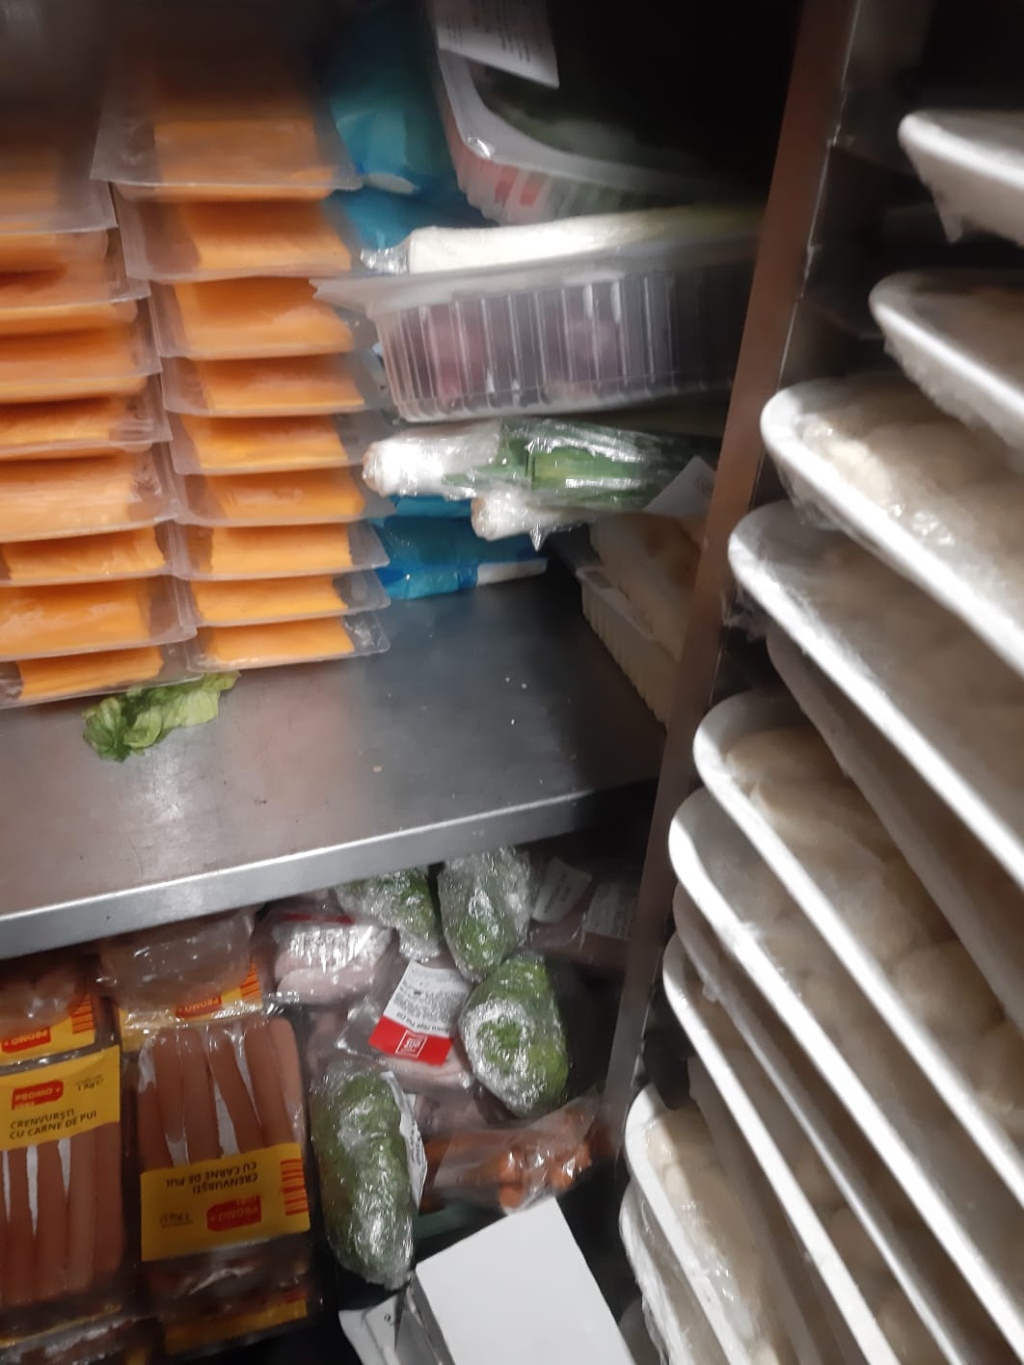 [GALERIE FOTO] Mizerie și mâncare stricată în zeci de restaurante de pe Litoral. Trei dintre acestea au fost închise